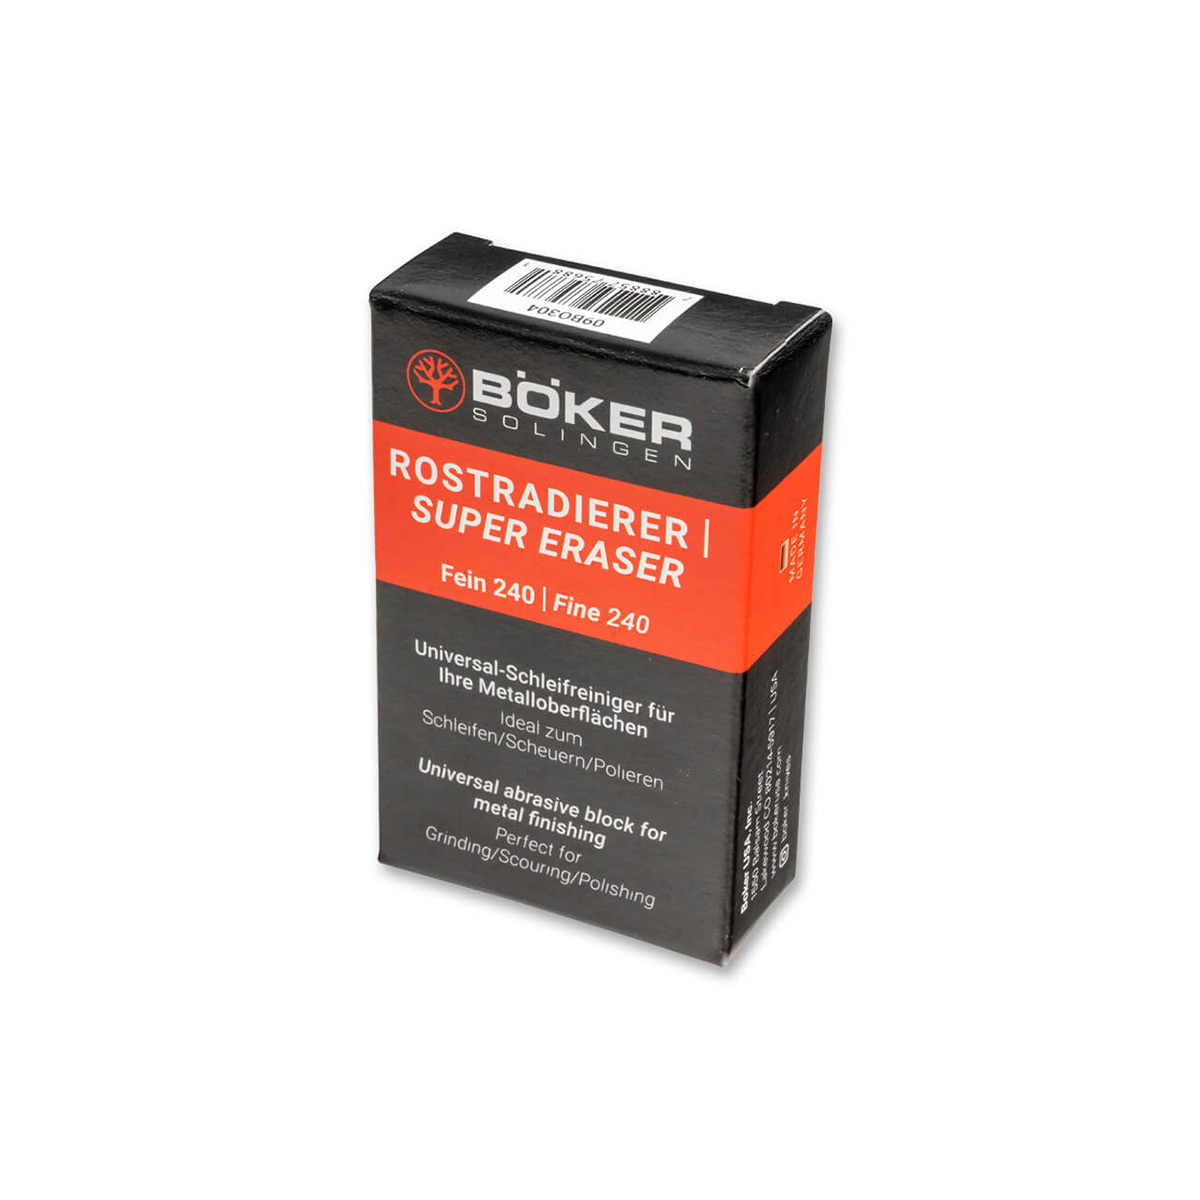 Ластик для ухода за ножами из высокоуглеродистых сталей Boker Super Eraser (240 grit)